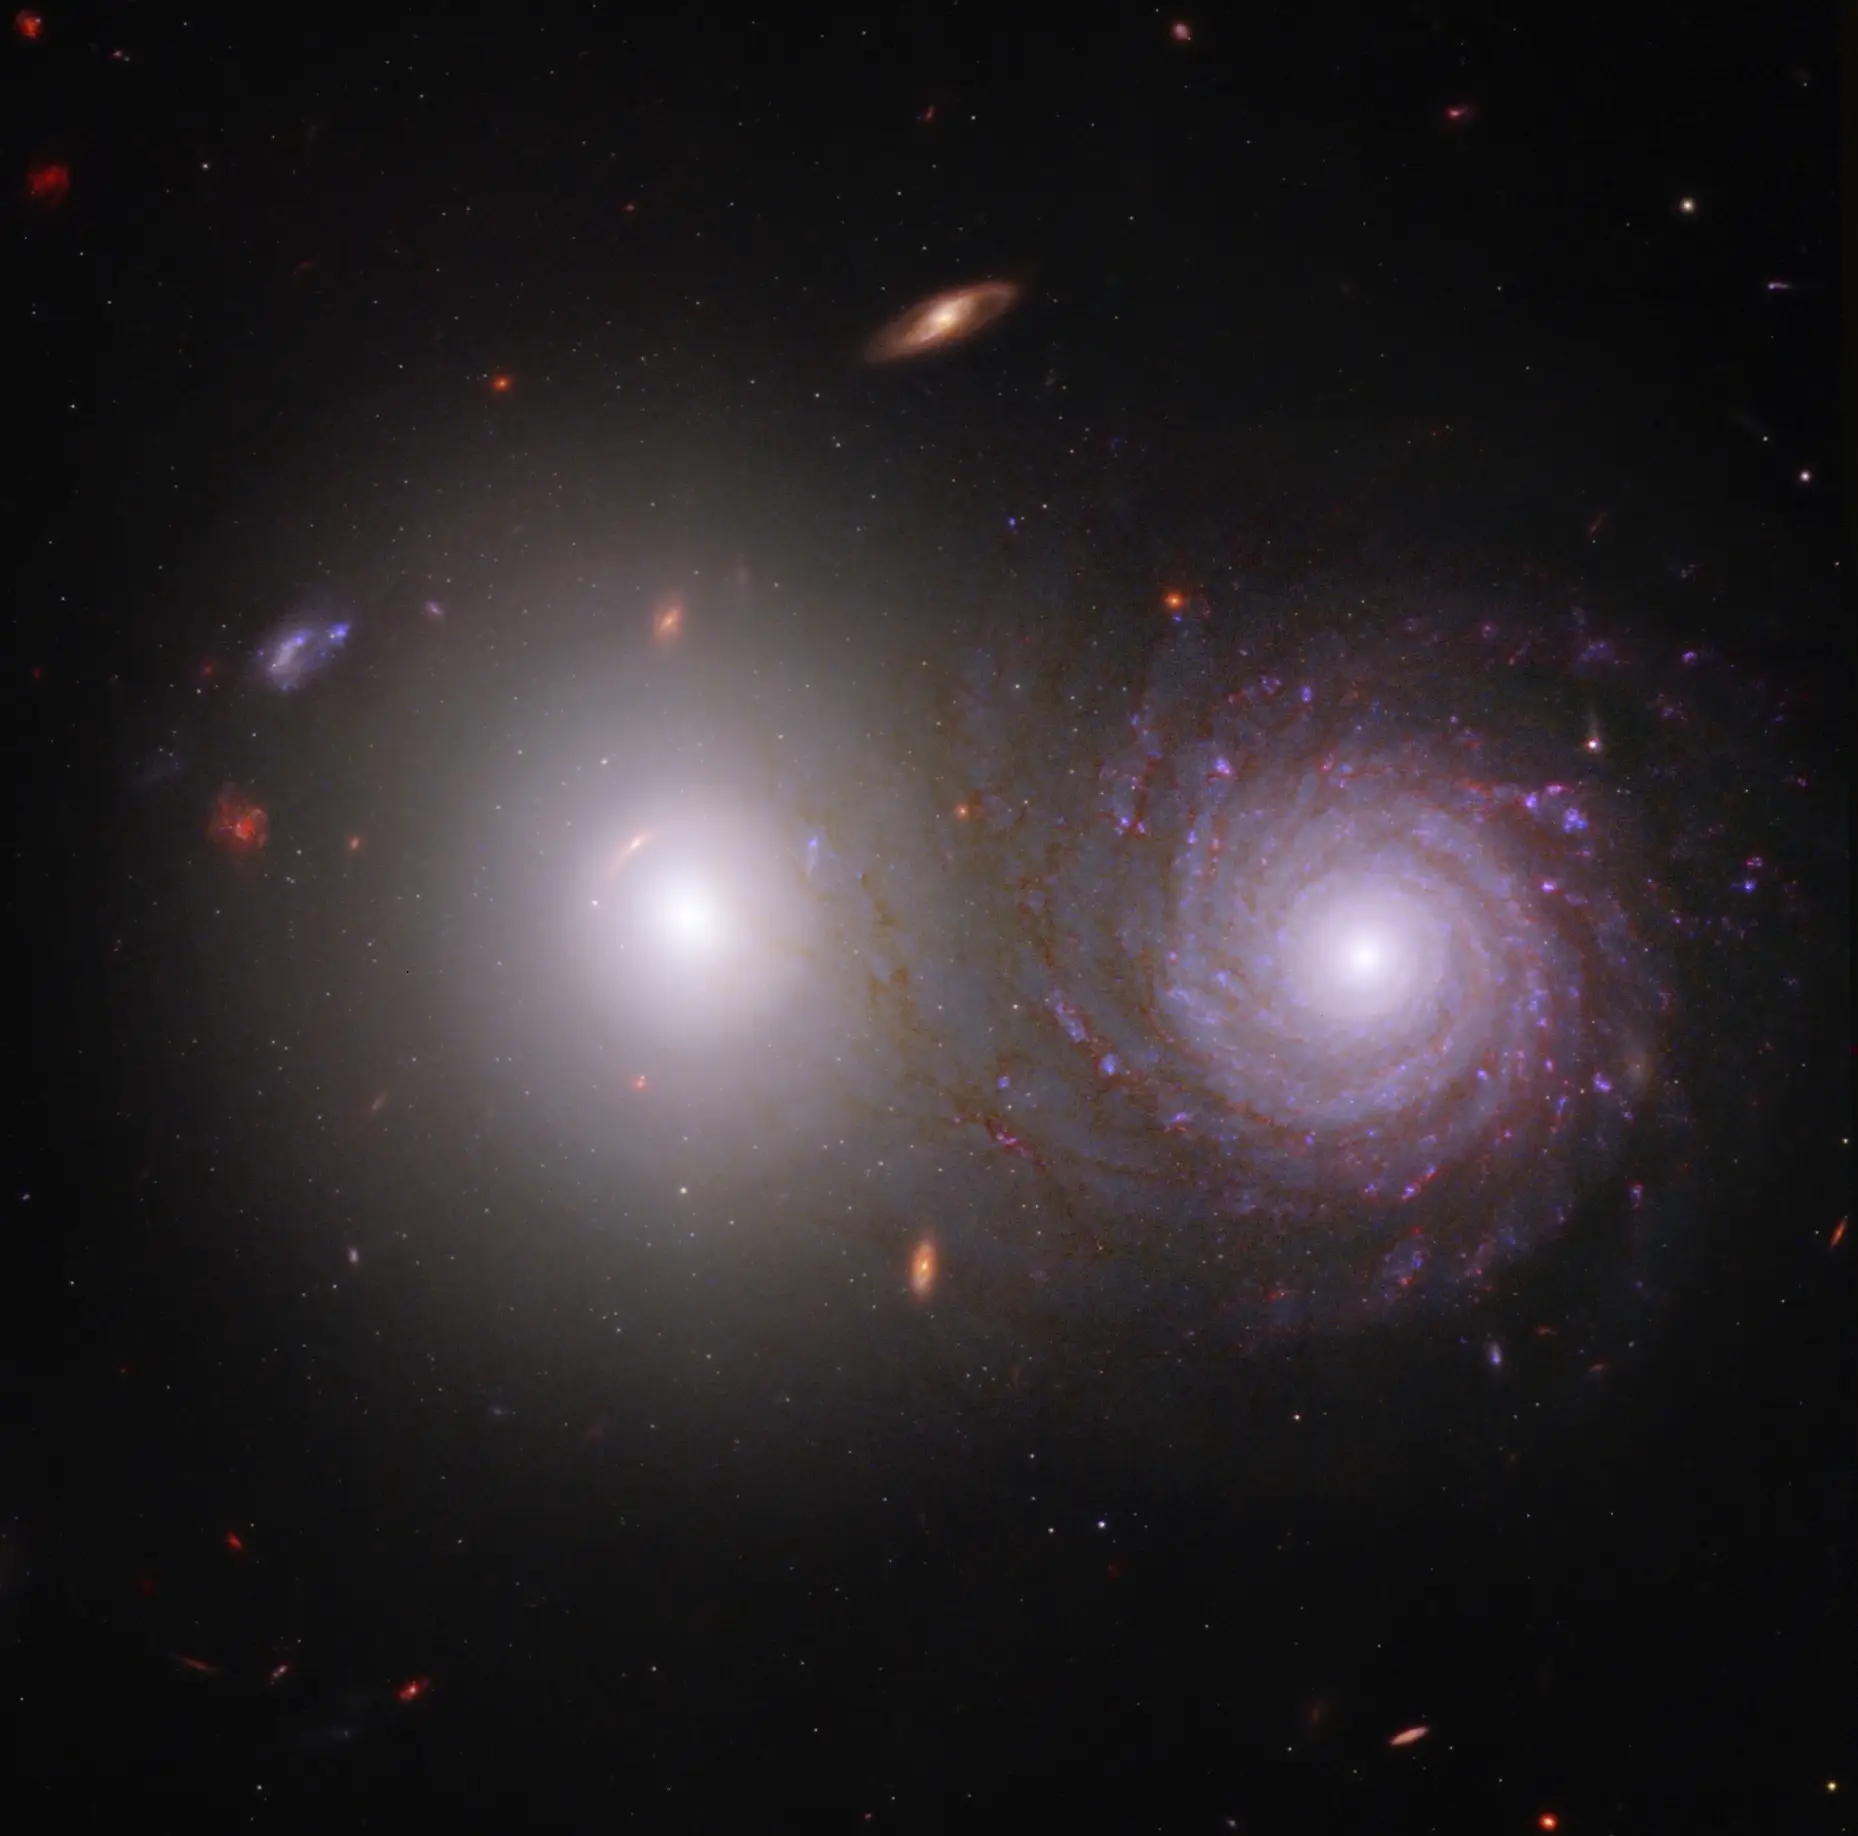 A combinação de dados recolhidos pelos telescópios espaciais James Webb e Hubble resulta numa espectacular imagem do par de galáxias VV 191. A luz infravermelha próxima do Webb e a luz ultravioleta e visível do Hubble permitem aos astrónomos ver a luz emitida pela grande galáxia elíptica branca à esquerda através da galáxia espiral à direita e identificar os efeitos das poeiras interestelares na galáxia espiral.